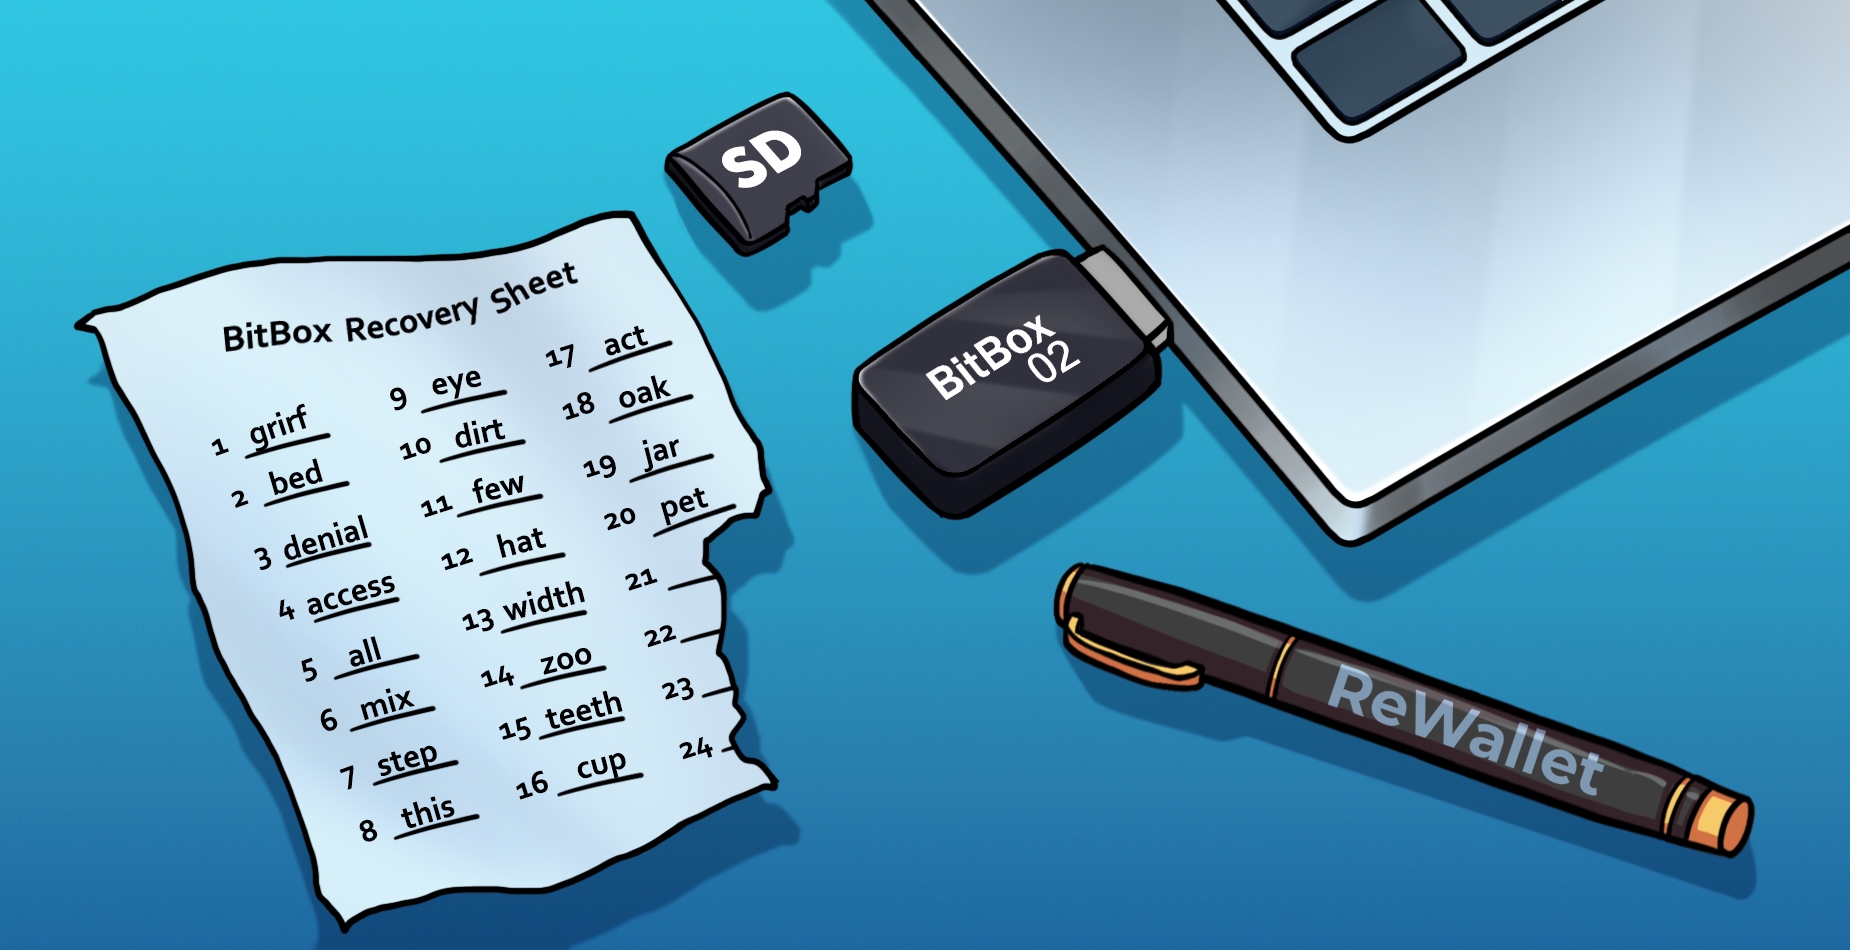 BitBox02, Backup SD Karte und 24 Wort Wiederherstellungsphrase auf einem Notizblatt, dargestellt neben einem Laptop. Der Wallet Recovery Service ReWallet hilft gerade bei der Wiederherstellung.